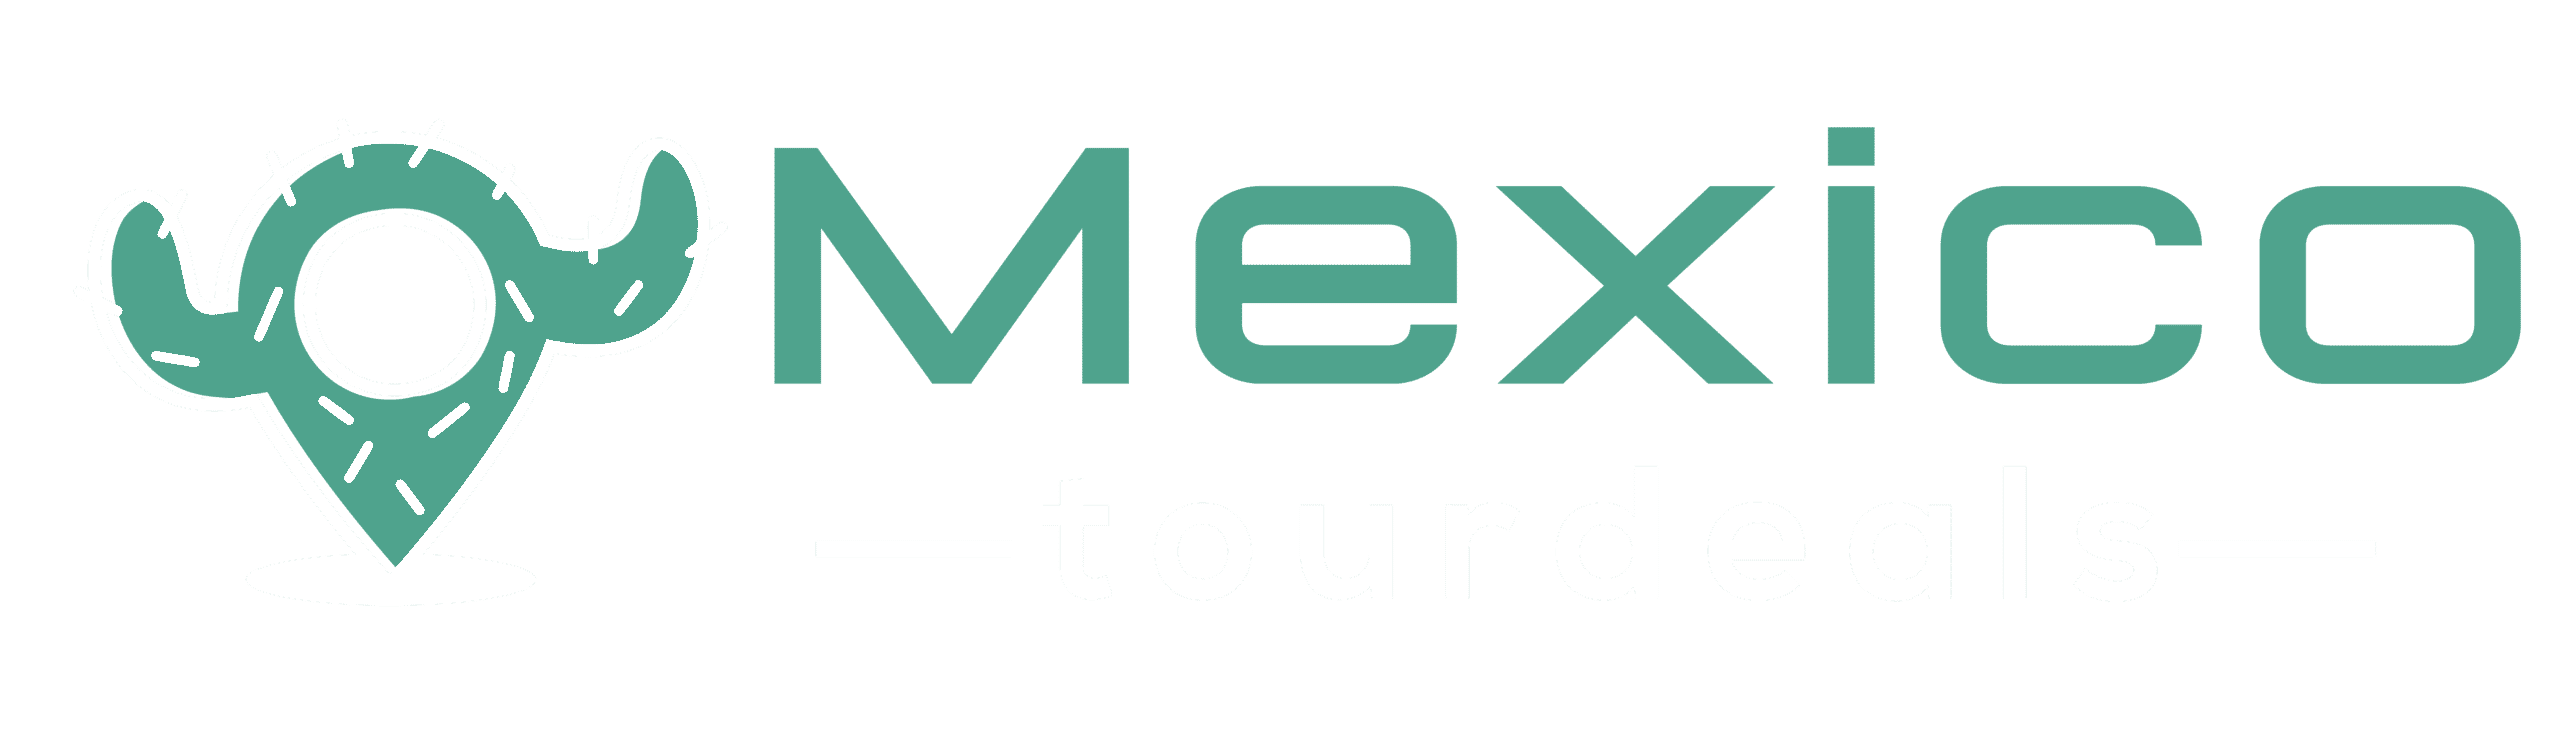 Mexico Tour Deals